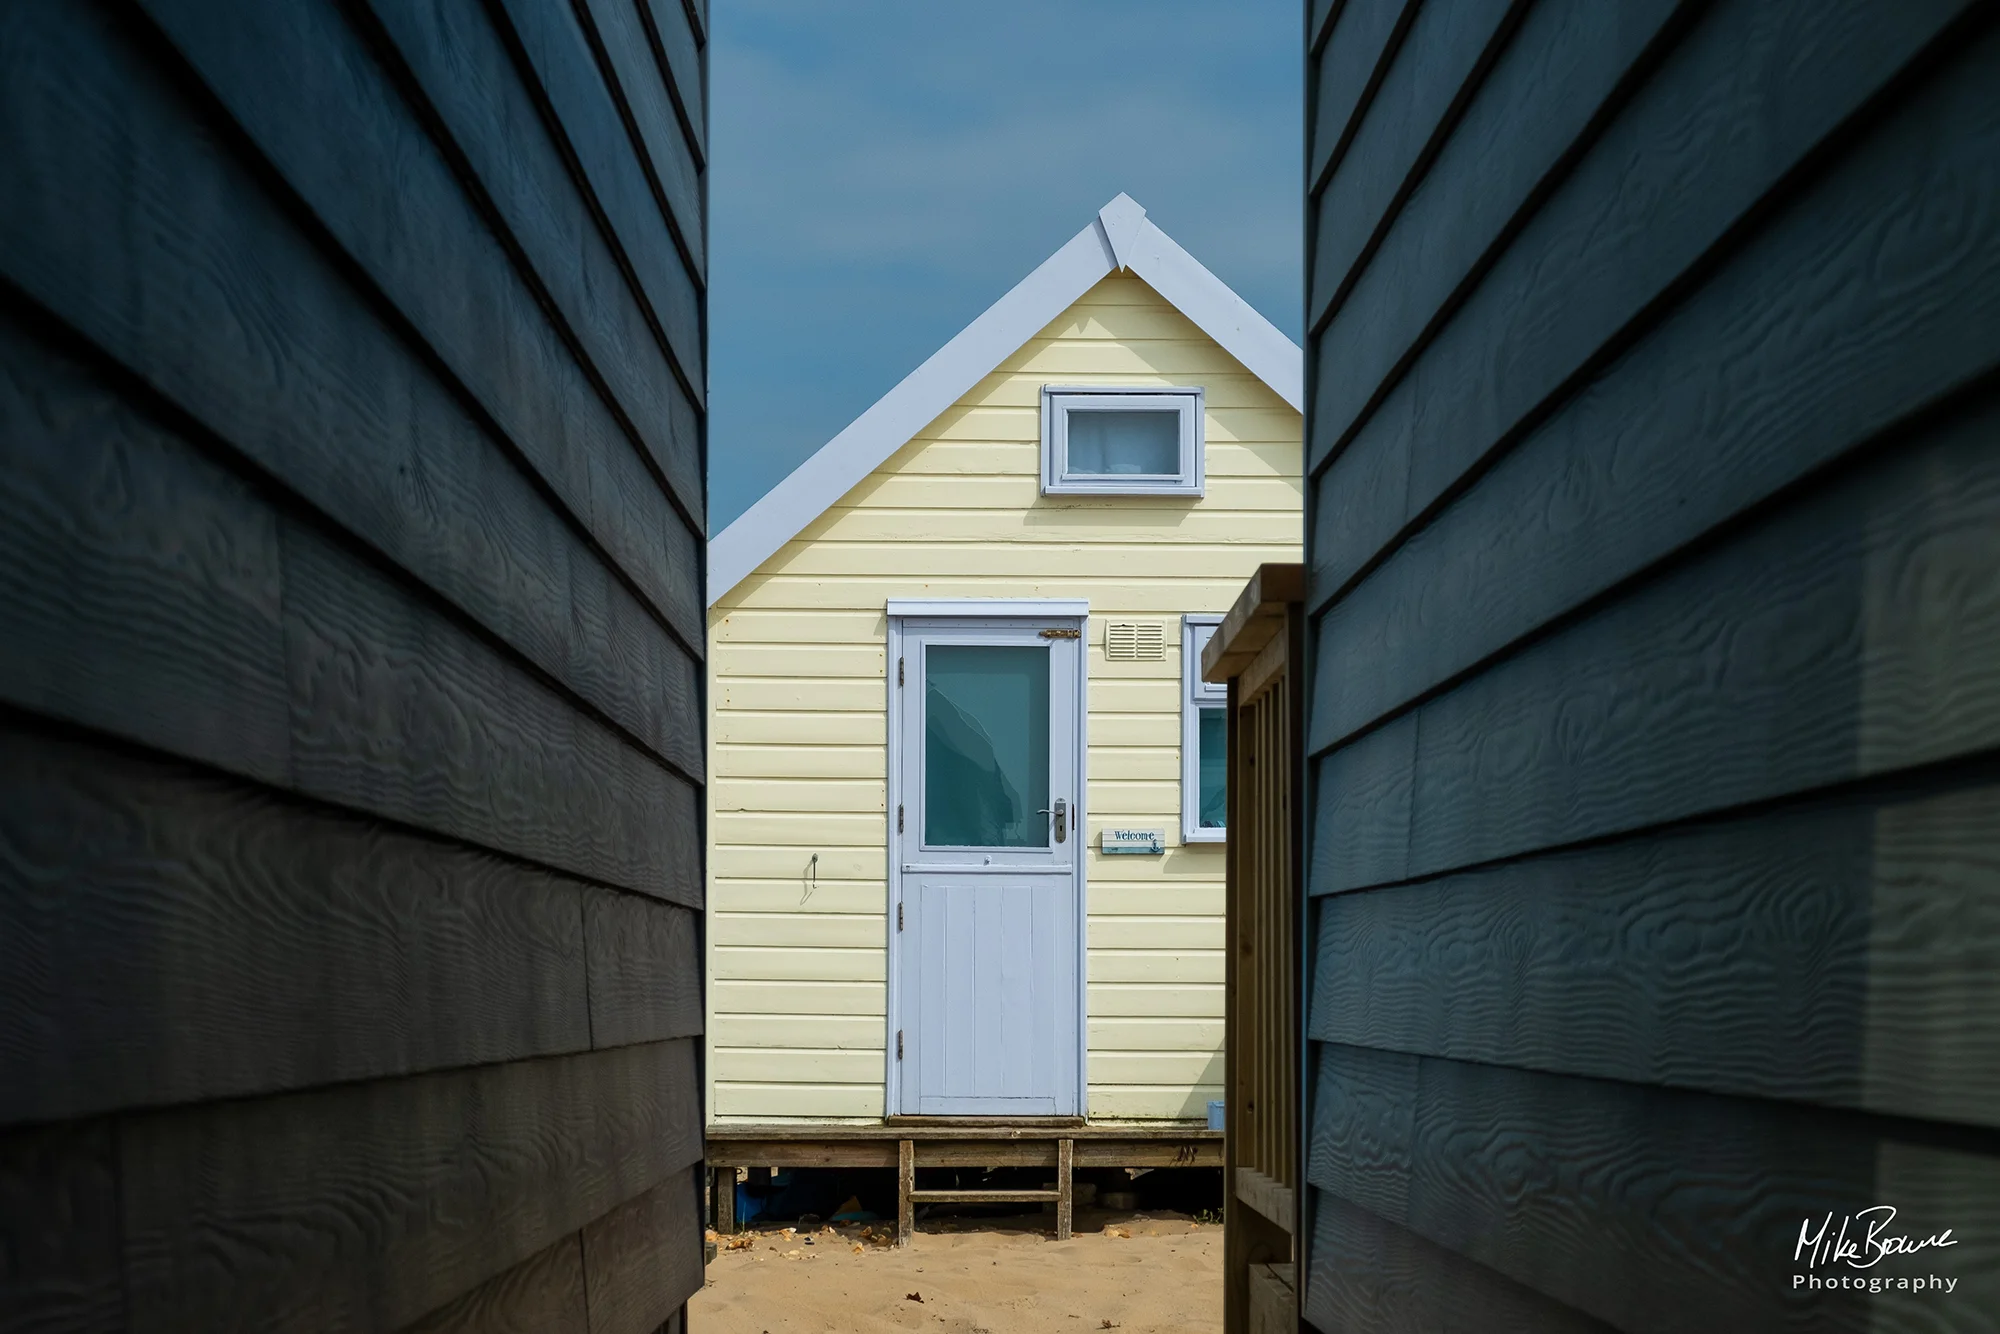 Blue and yellow beach hut at Hengistbury Head, UK